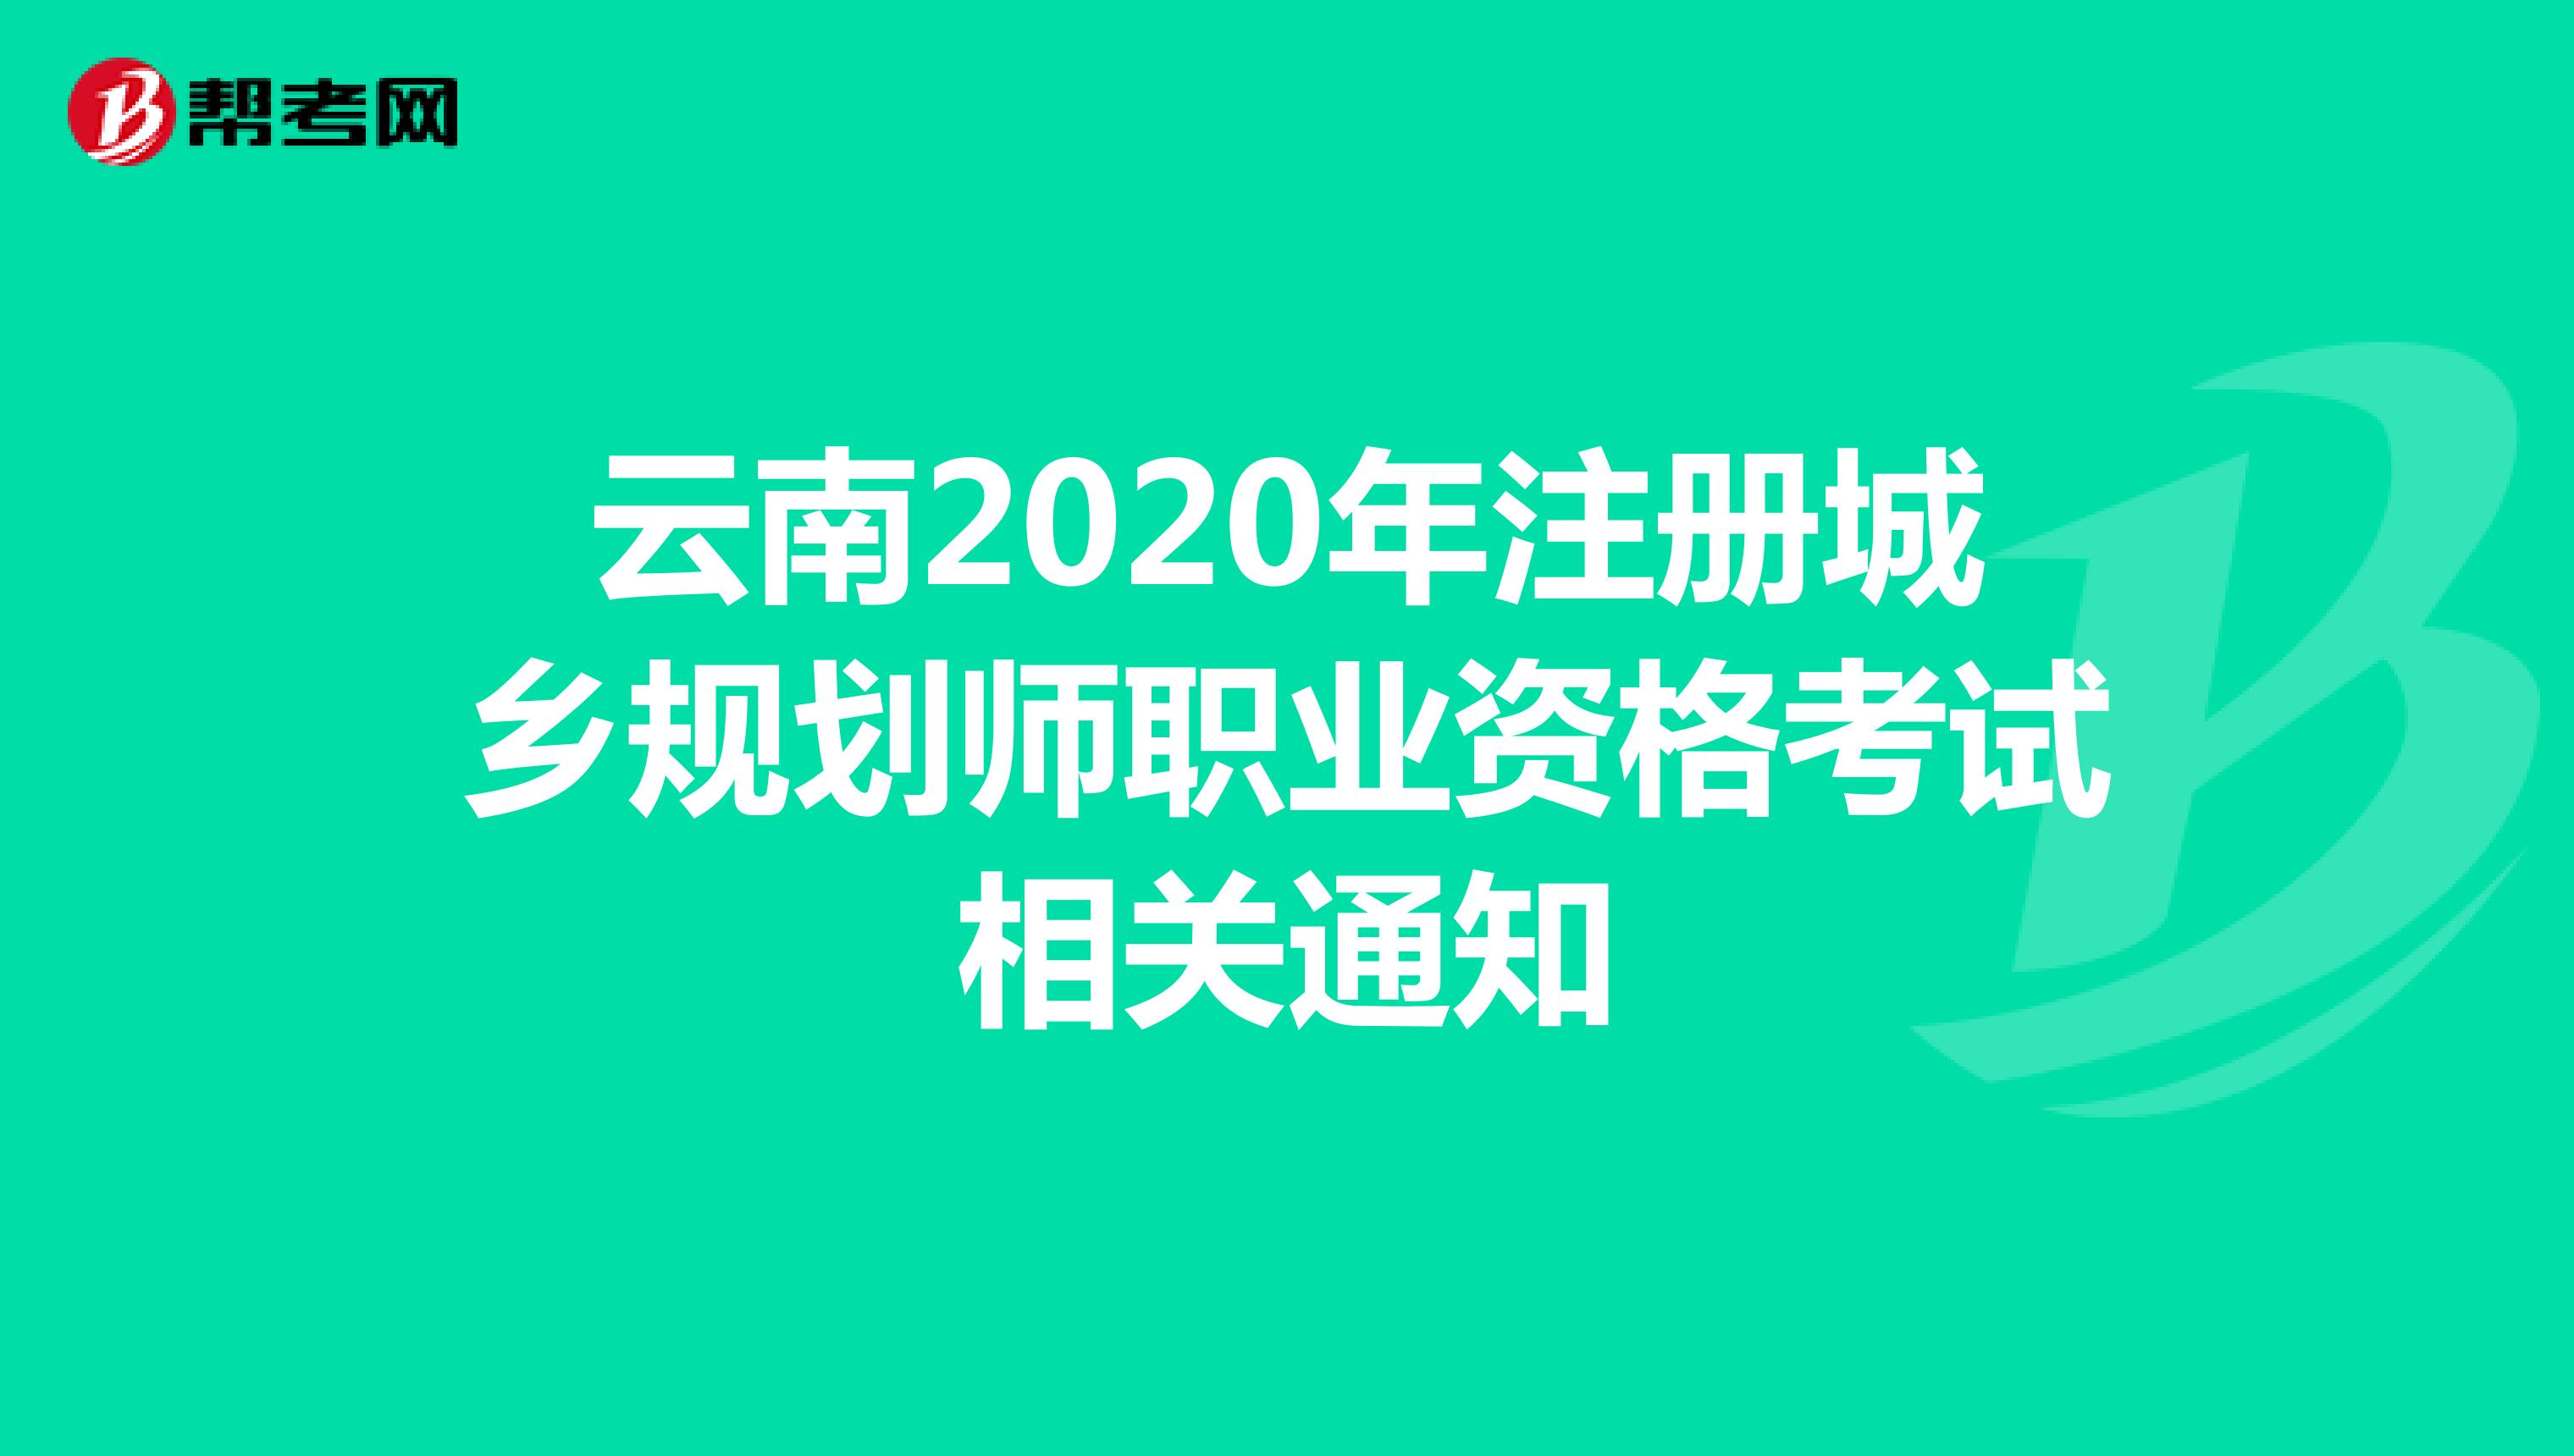 云南2020年注册城乡规划师职业资格考试相关通知